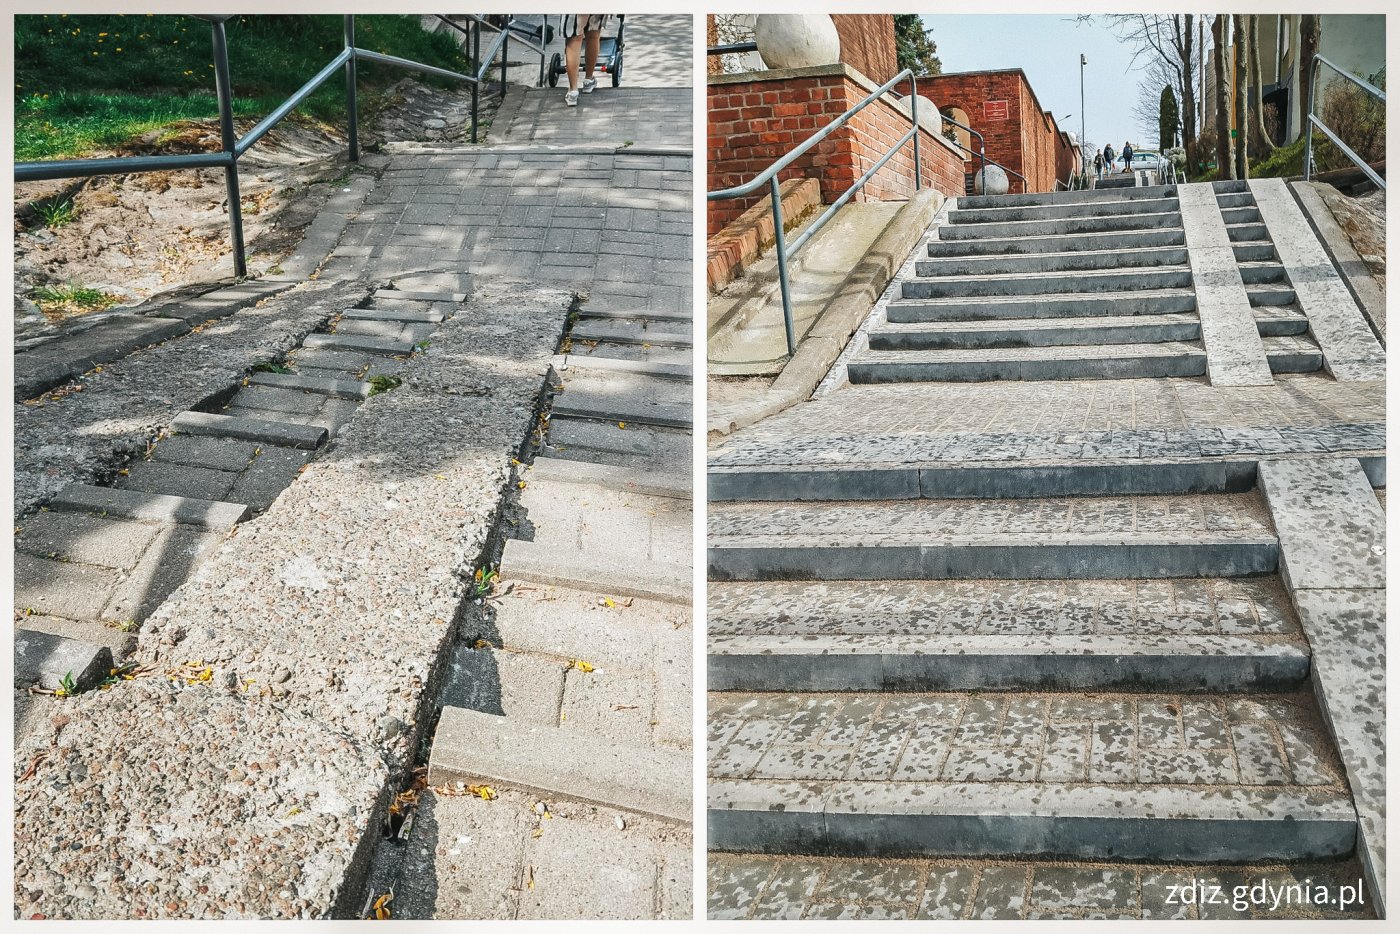 kolaż zdjęć, z lewej strony widoczne schody przed remontem, z prawej strony schody po remoncie, nowa nawierzchnia